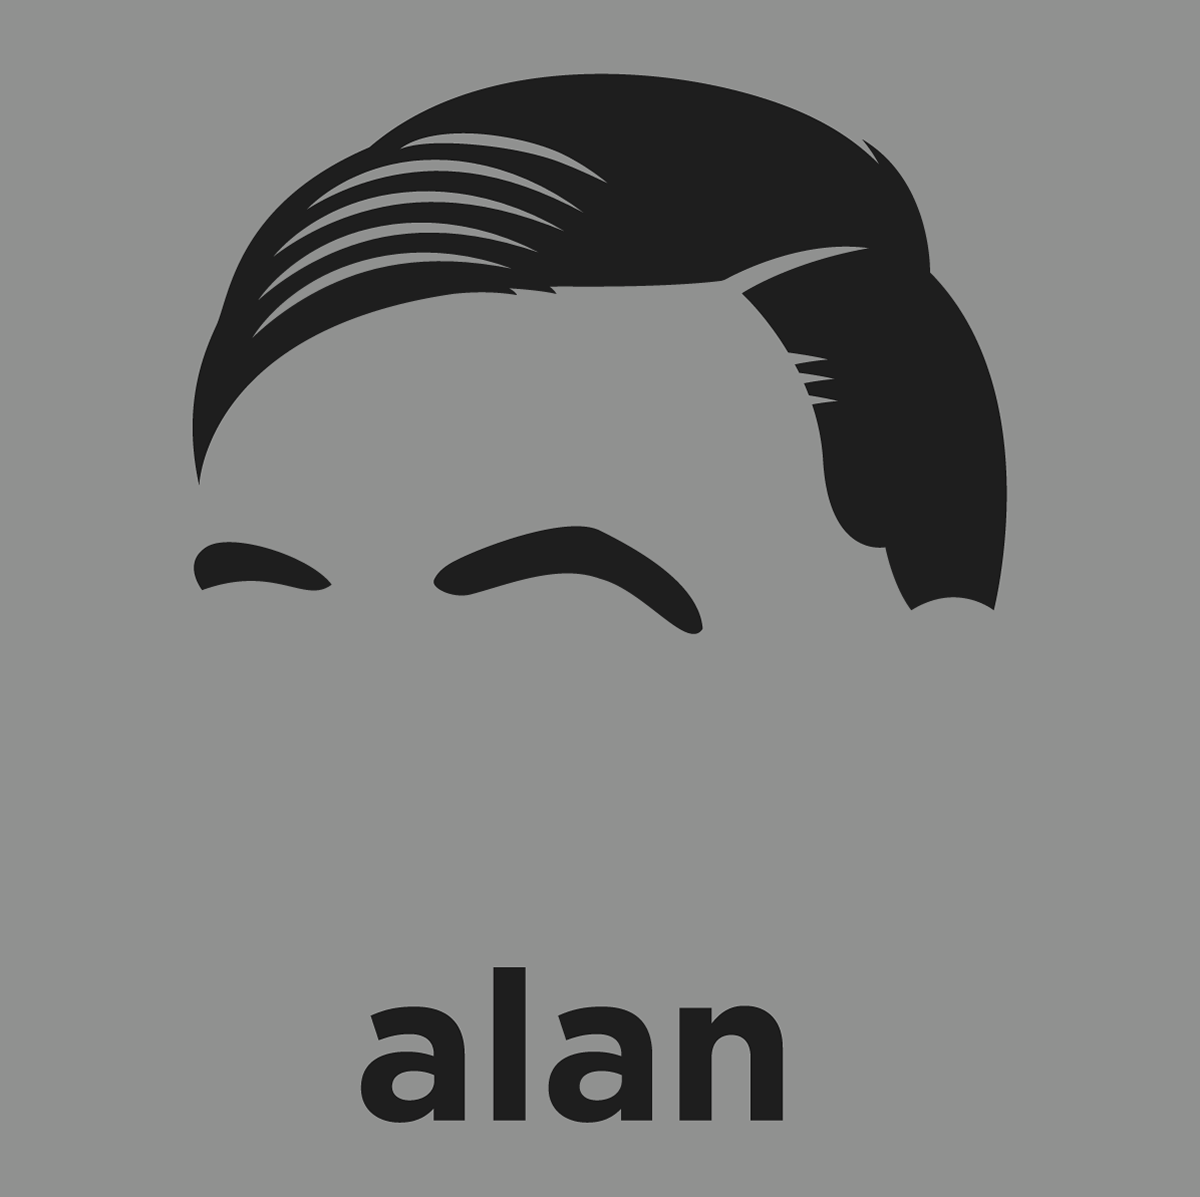 Alan Turing shirt from Hirsute History